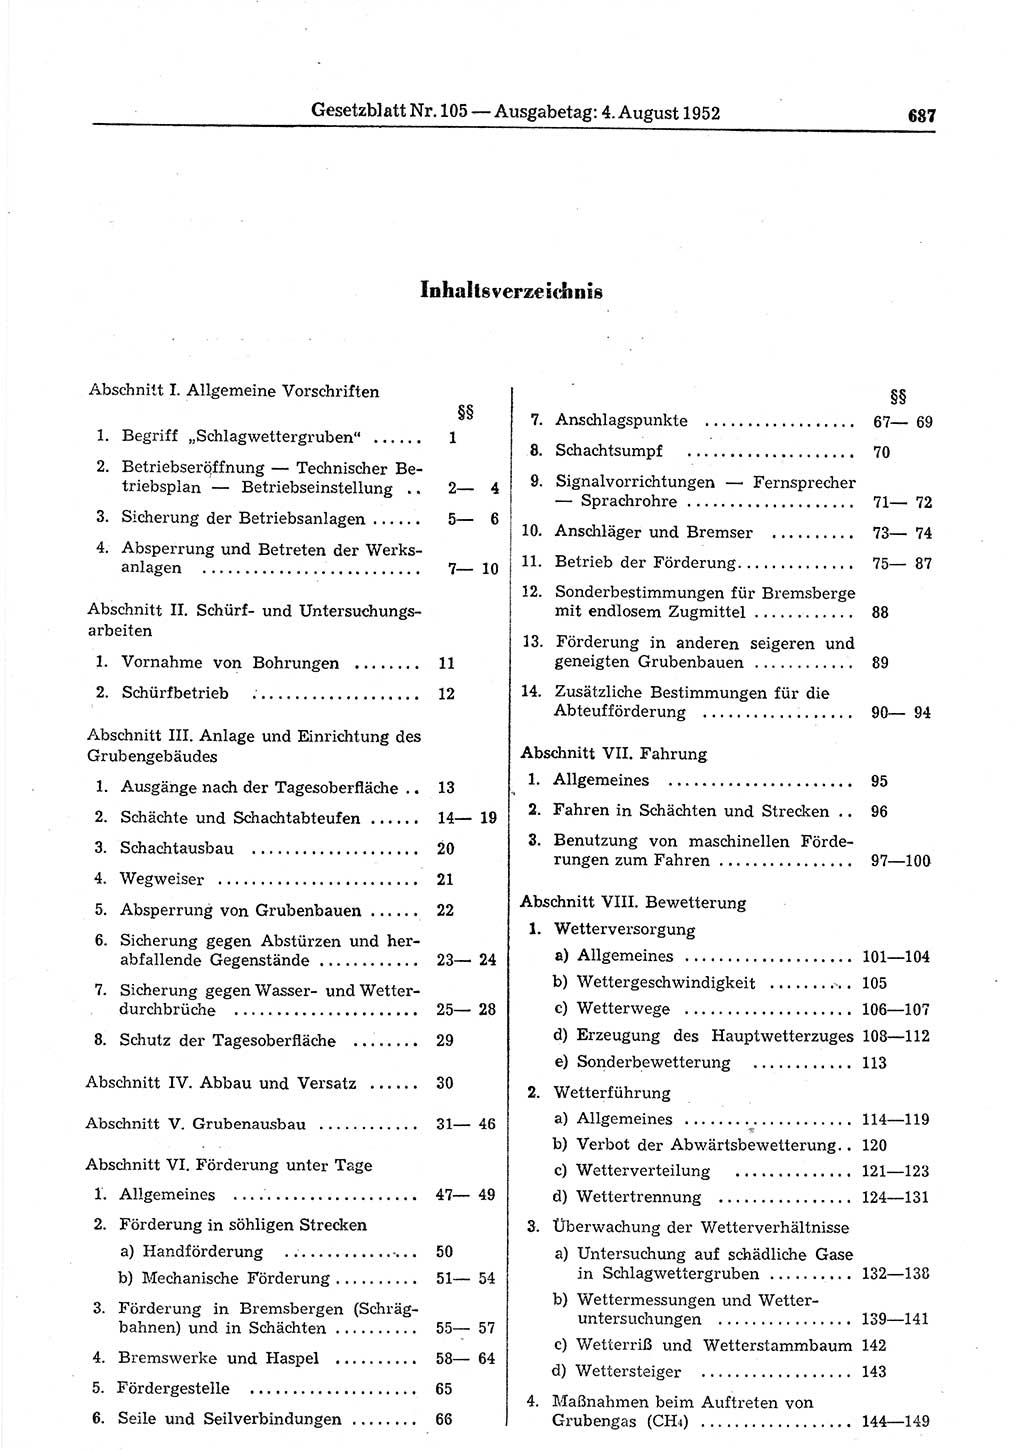 Gesetzblatt (GBl.) der Deutschen Demokratischen Republik (DDR) 1952, Seite 687 (GBl. DDR 1952, S. 687)